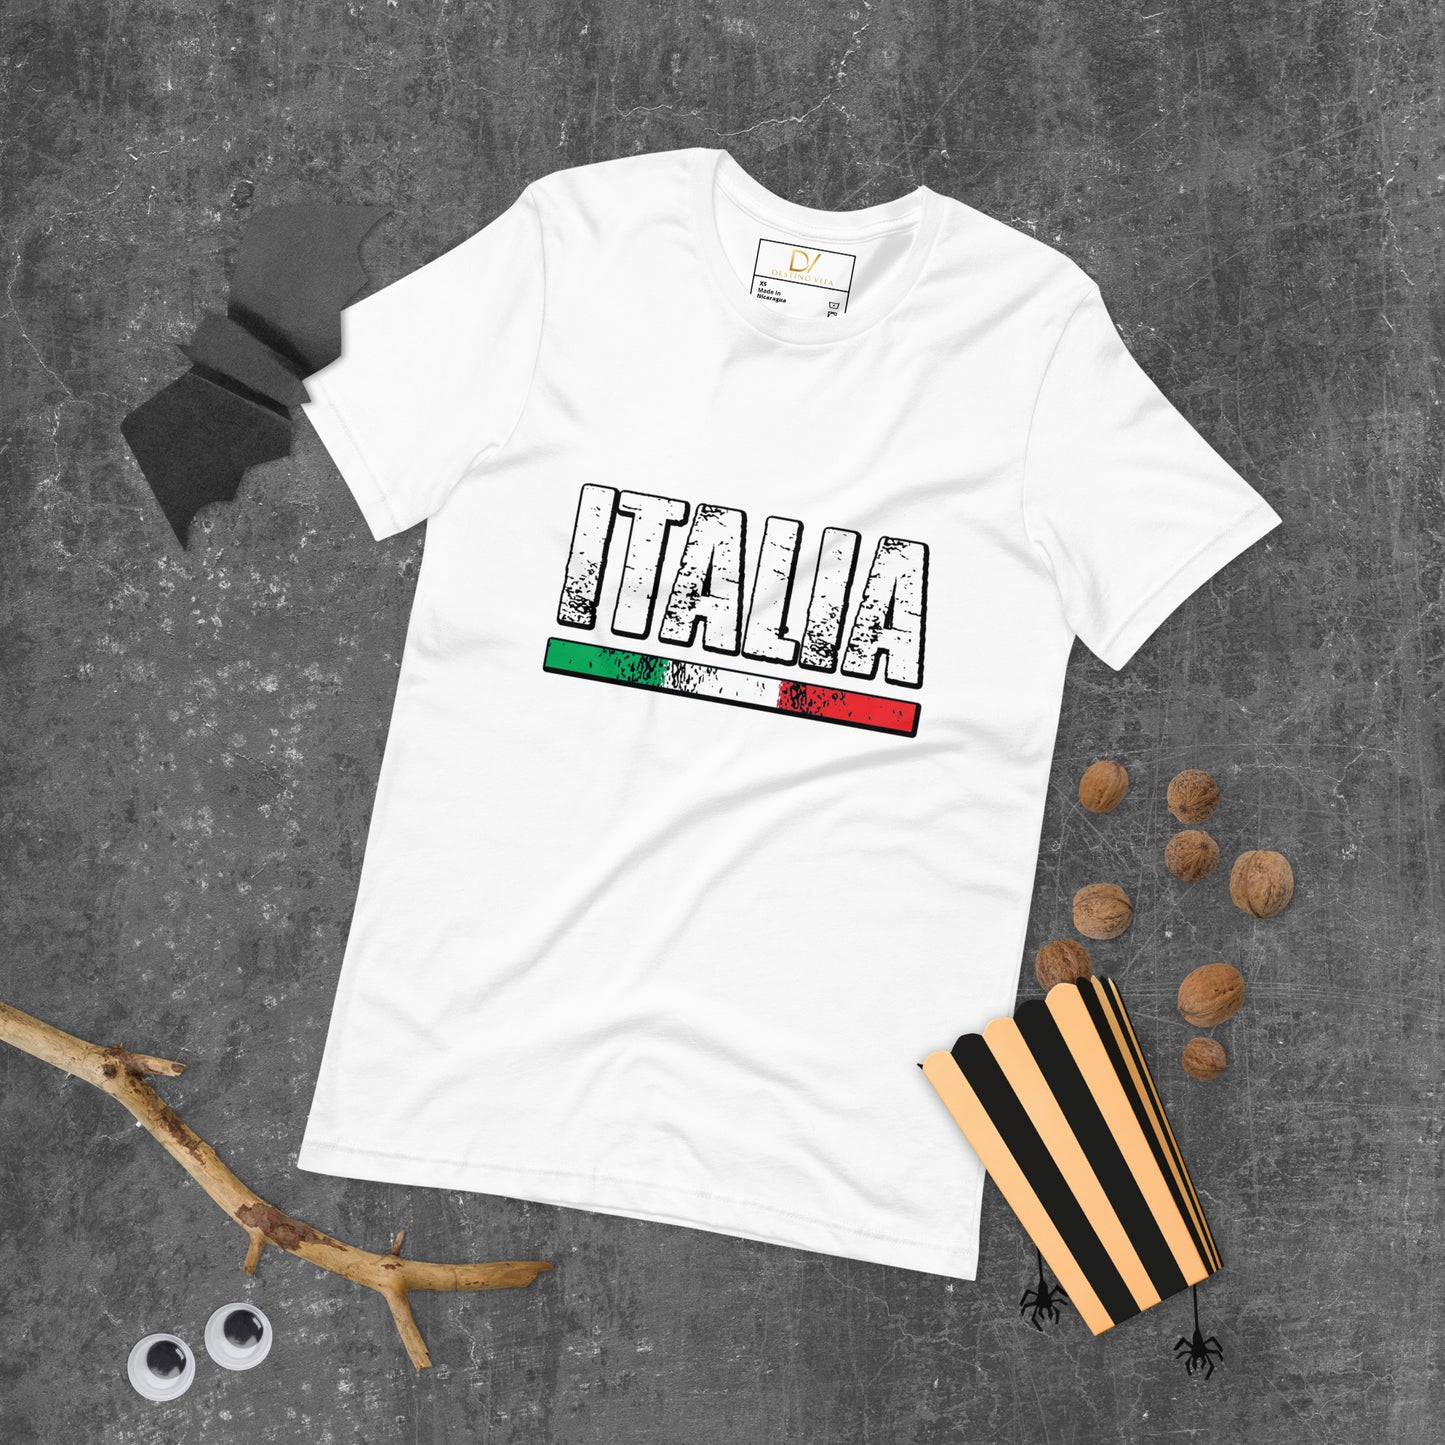 Unisex t-shirt - ITALIA